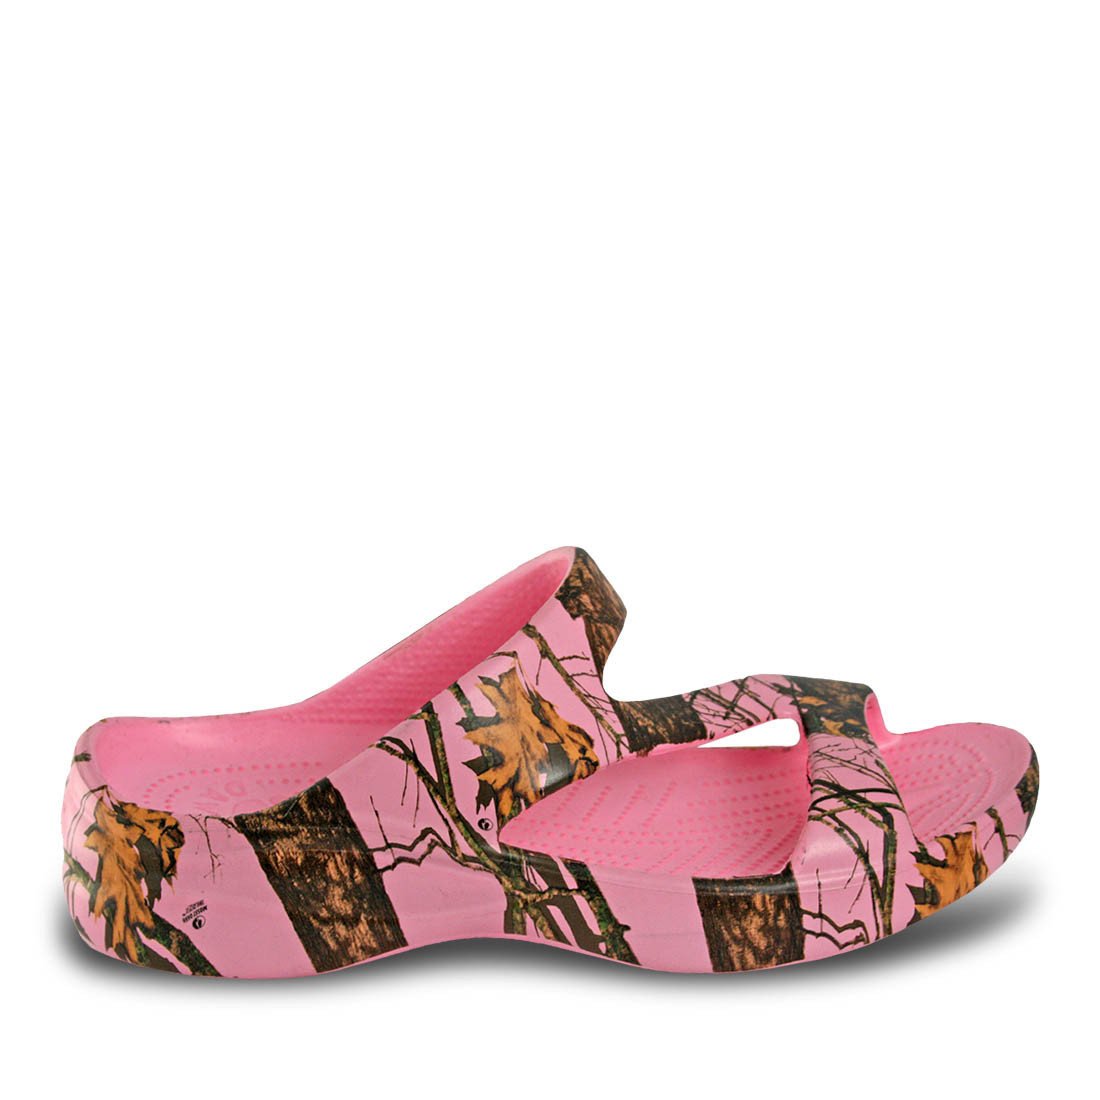 Women's Mossy Oak Z Sandals - Pink Breakup Infinity